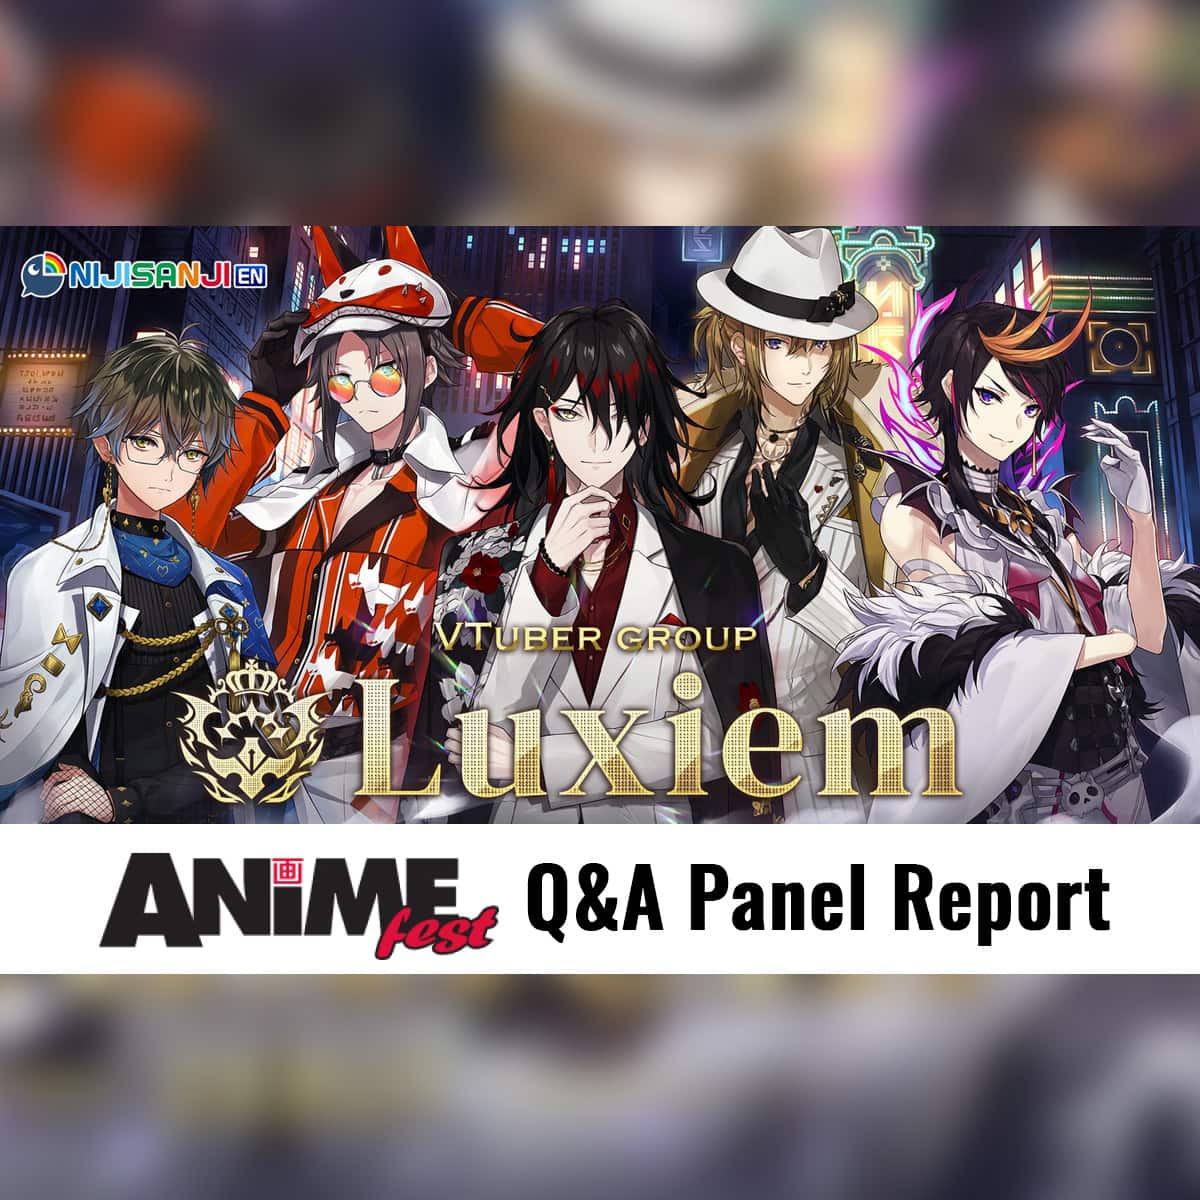 AnimeFest Luxiem Live Q&A Panel Report